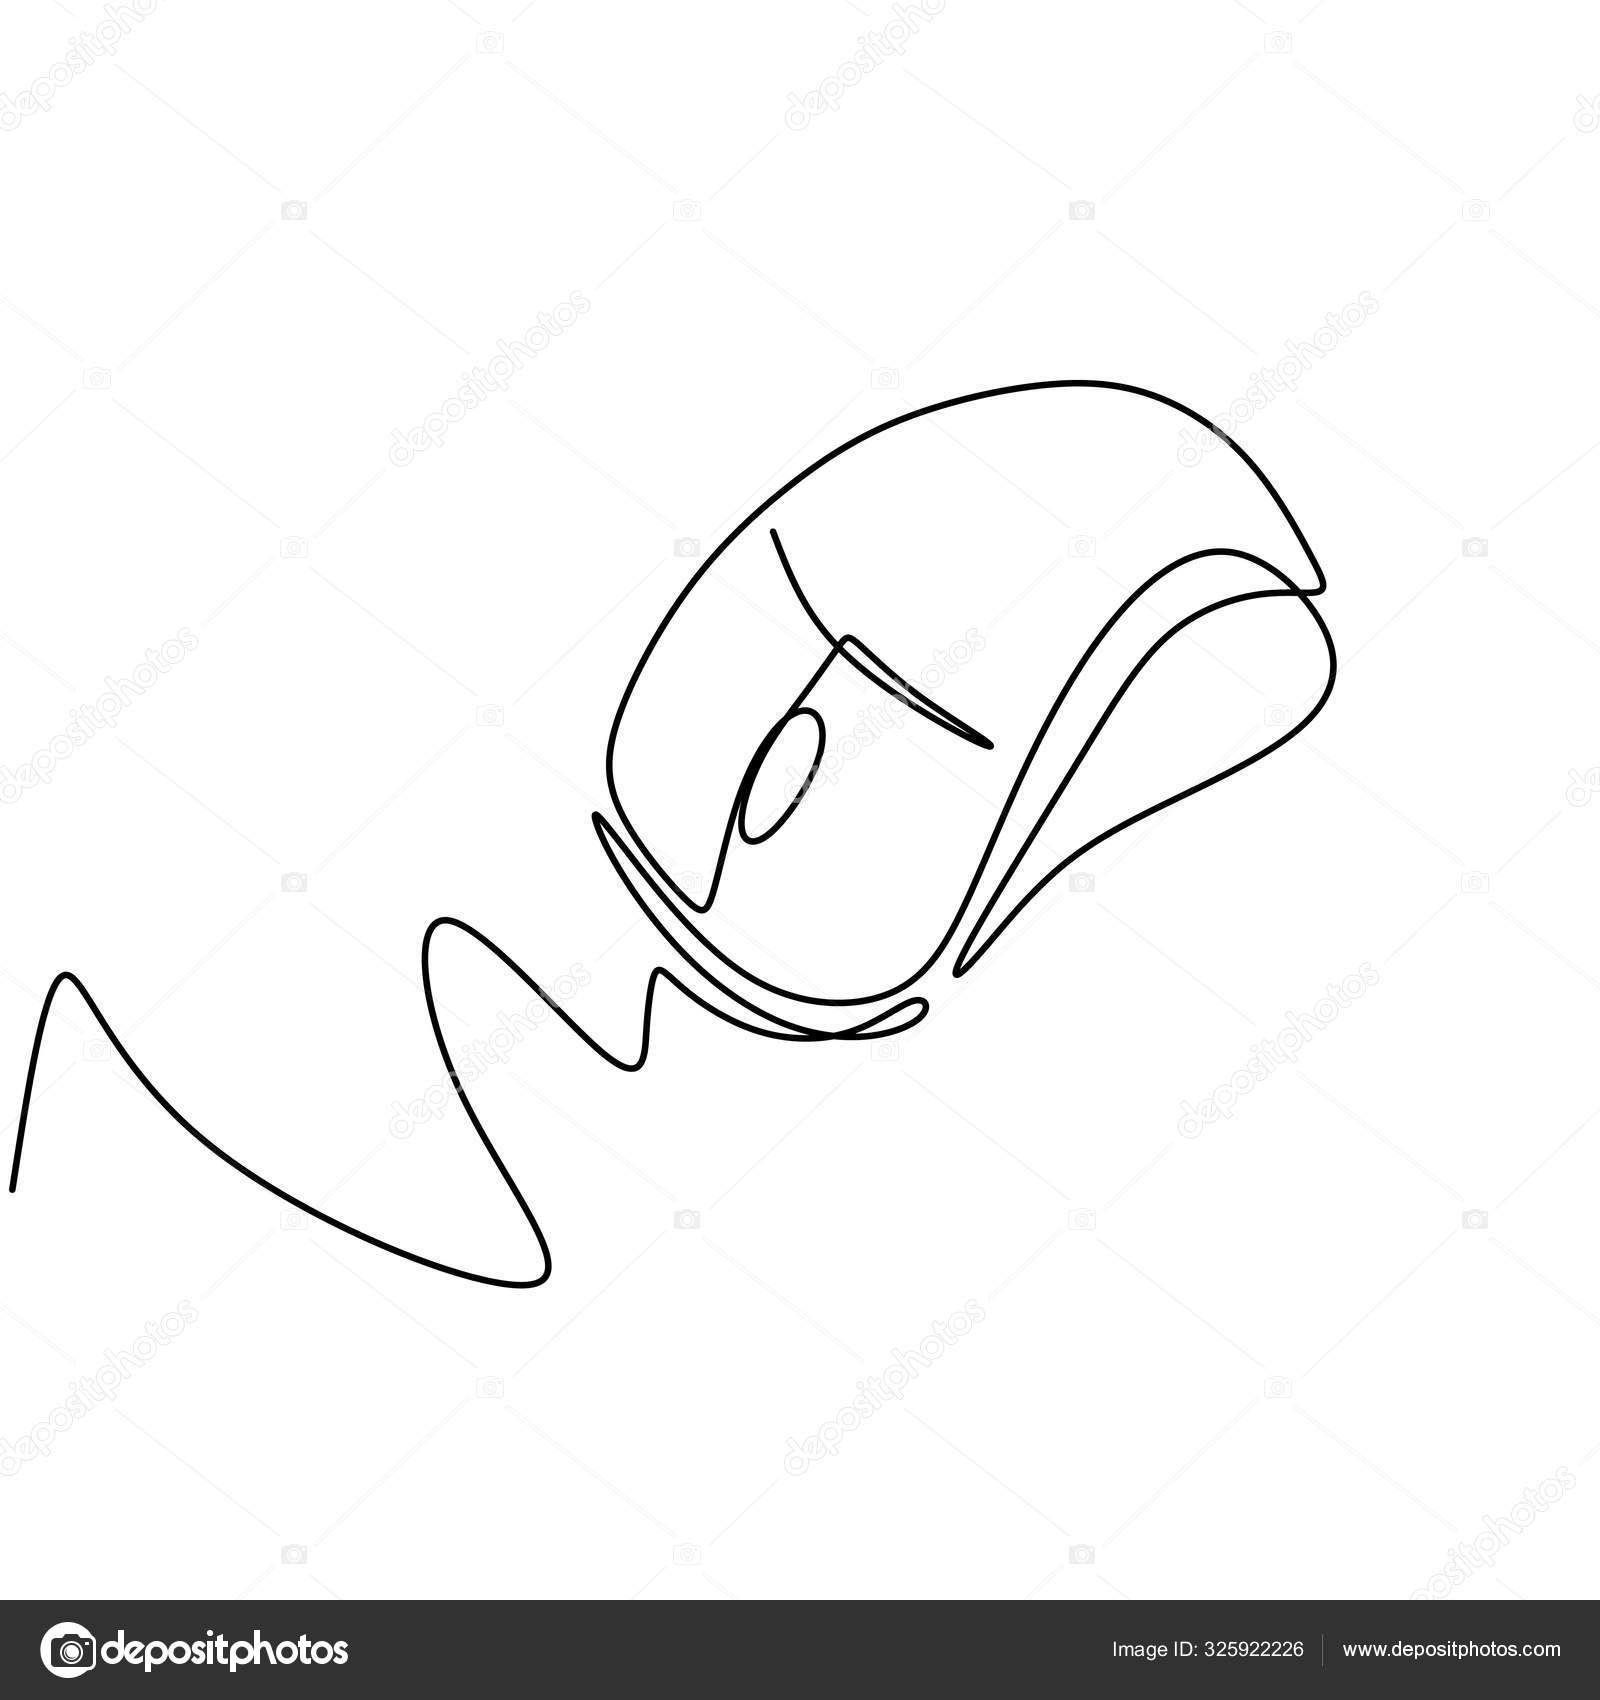 How to Draw a Computer Mouse-saigonsouth.com.vn